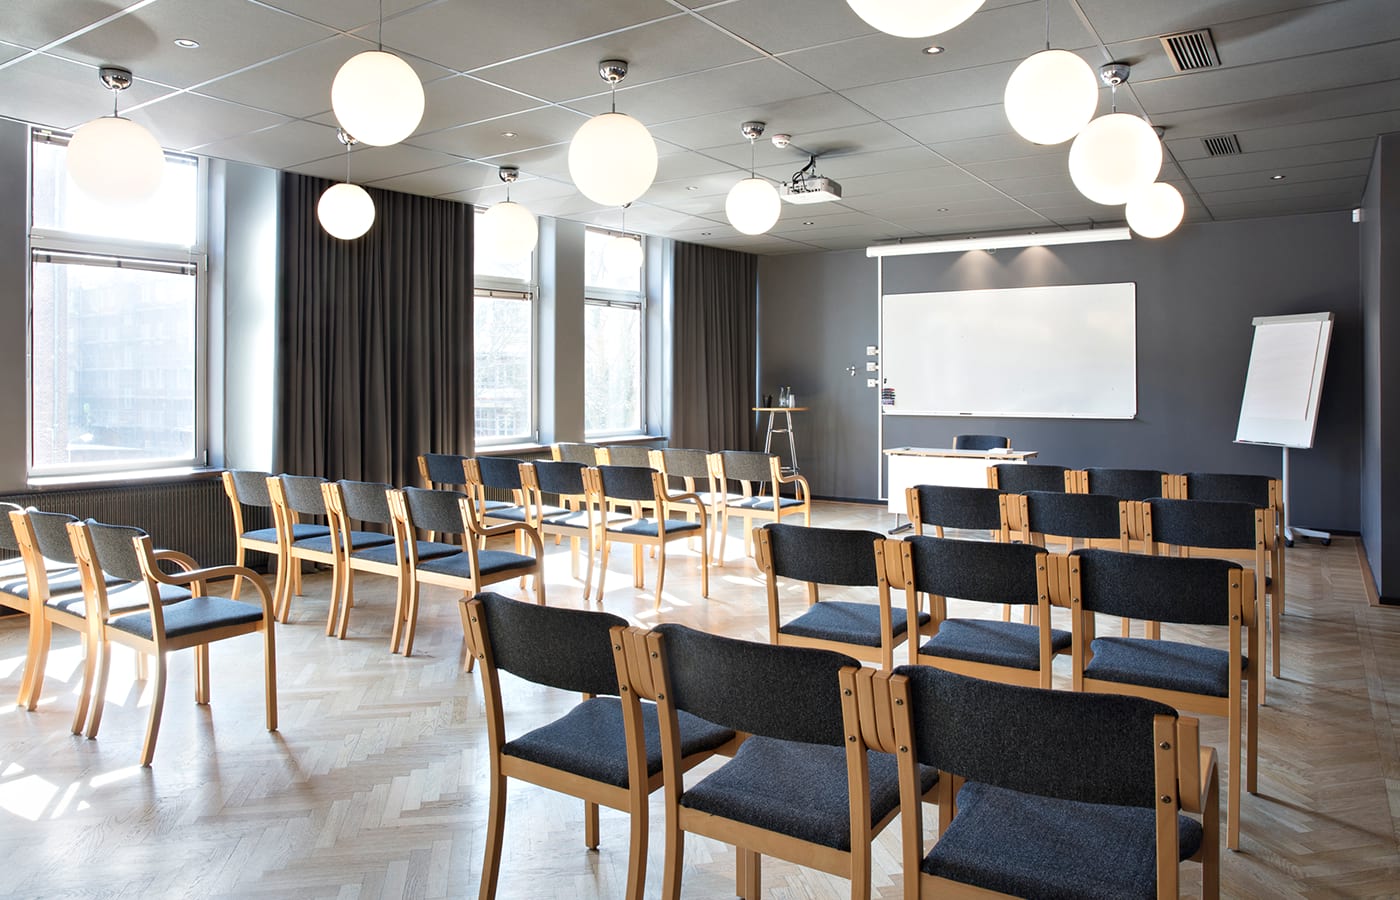 Konferensrum med ljus parkett, trästolar med grått tyg, grå gardiner i stora fönster, whiteboardtavla